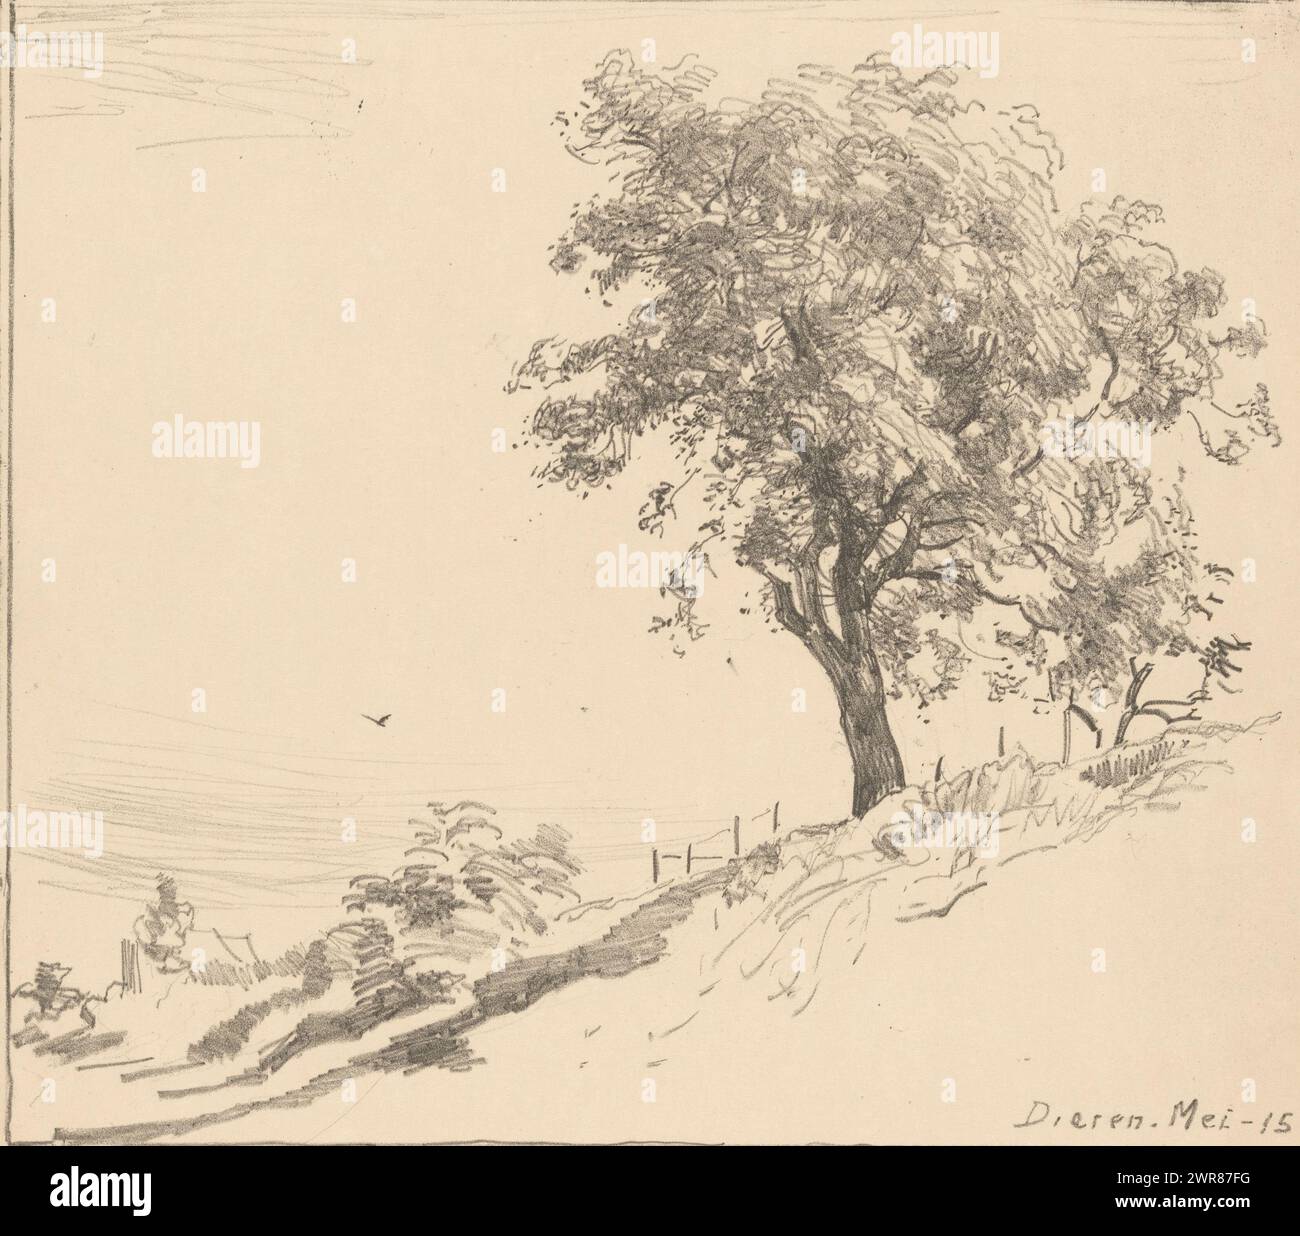 Paesaggio con un albero su una diga a Dieren, albero su diga (titolo originale), stampatore: Willem Bastiaan Tholen, (firmato dall'artista), c. 1905 - c. 1920, carta, altezza 395 mm x larghezza 323 mm, stampa Foto Stock